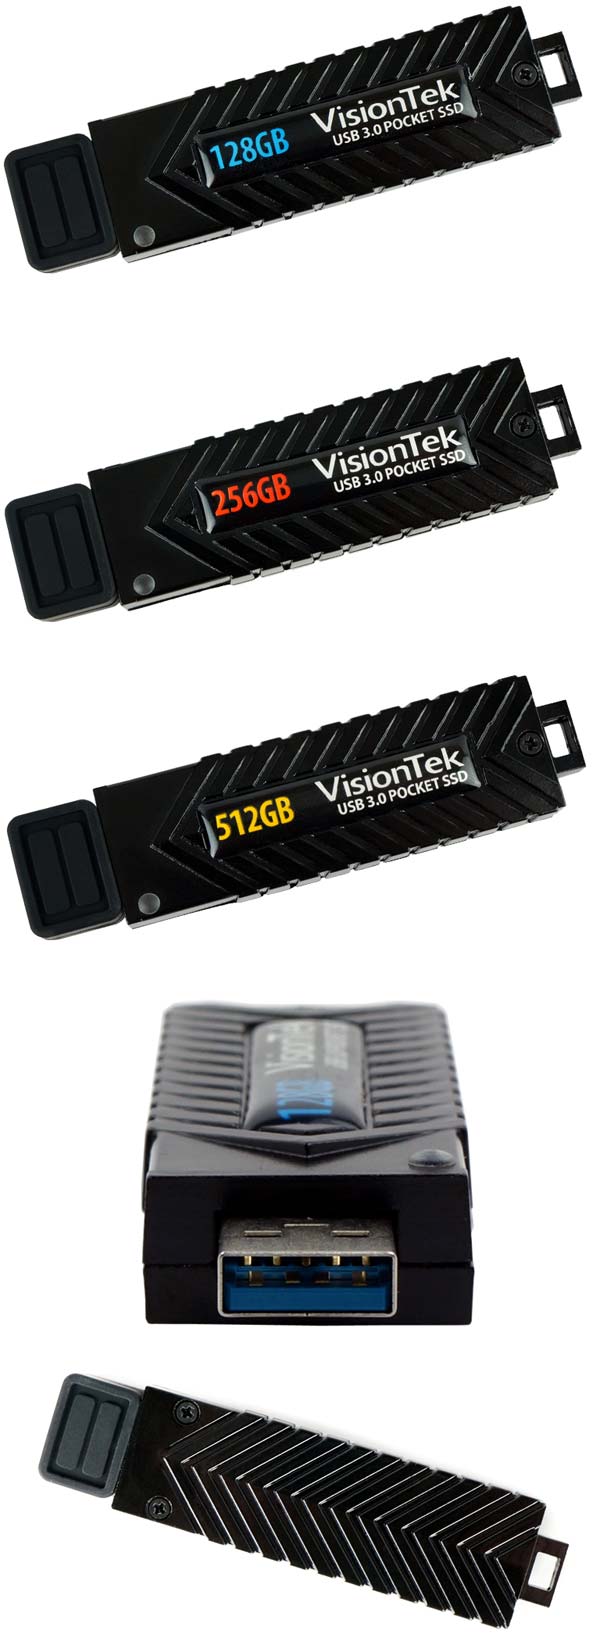 Новые варианты VisionTek USB 3.0 Pocket SSD